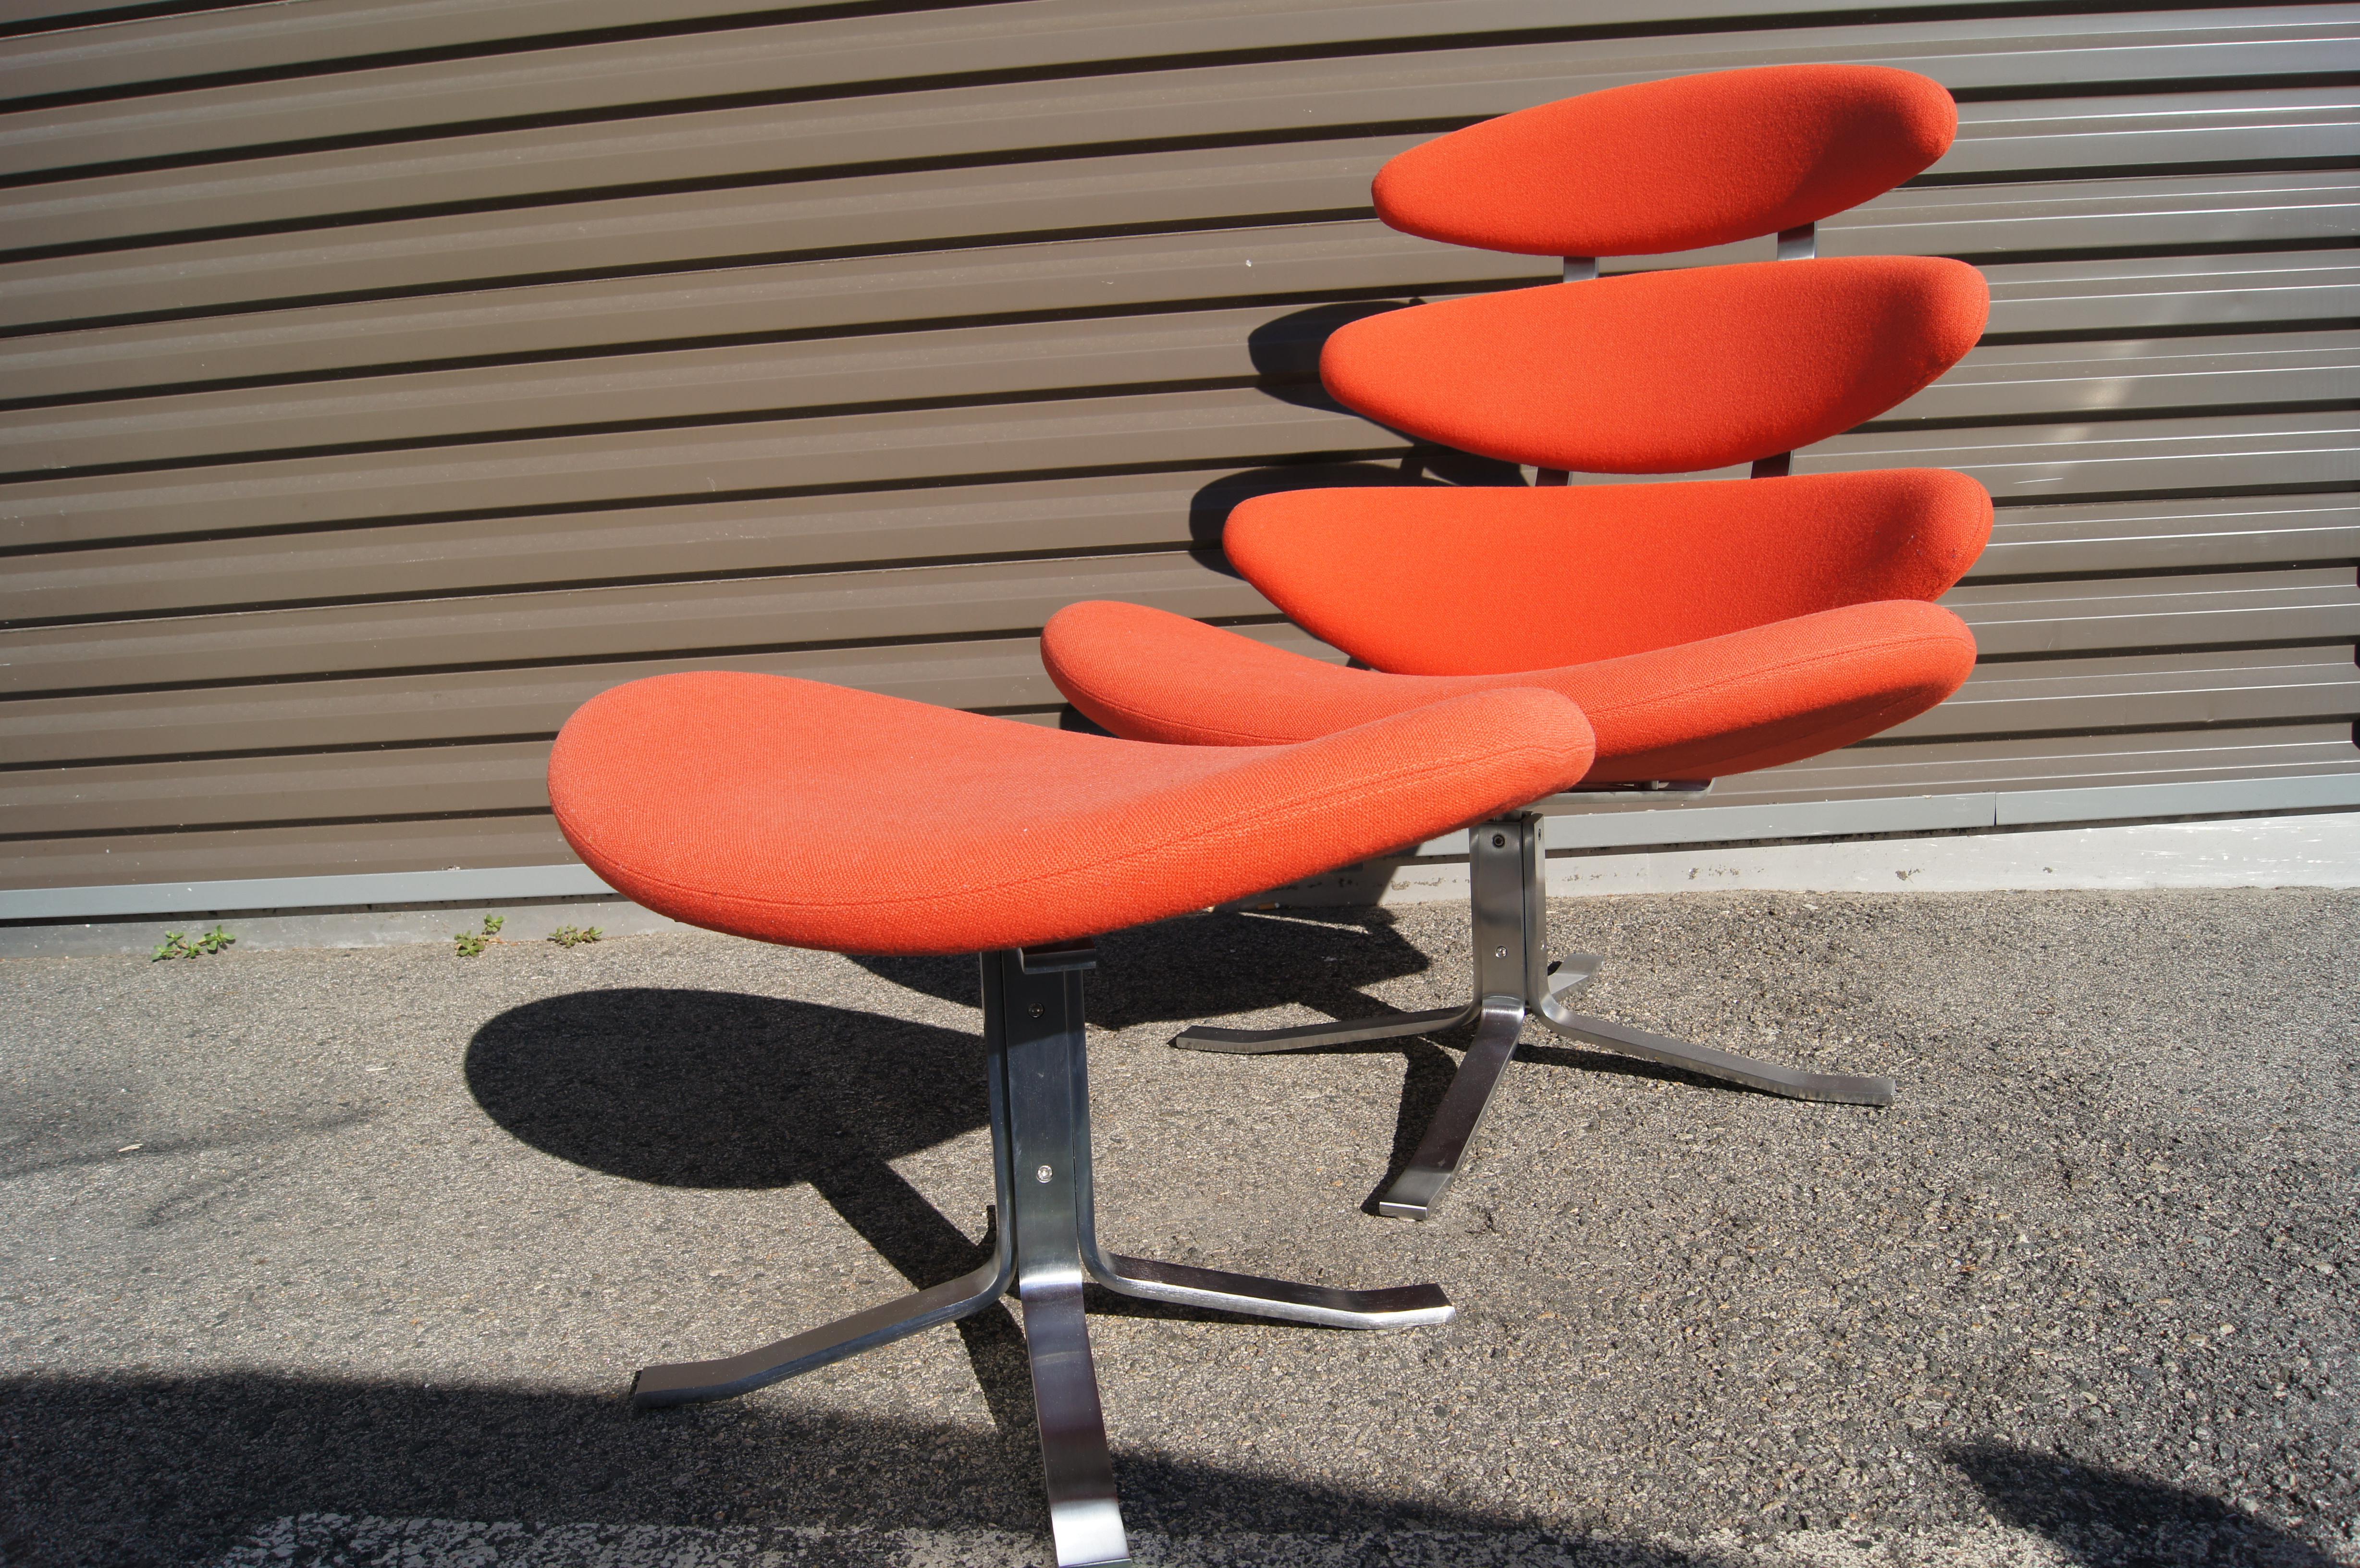 Poul M. Volther a conçu la chaise classique Corona pour Erik Jørgensen en 1964. Quatre coussins rembourrés, ici dans un orange vibrant, montent sur un cadre en acier inoxydable qui pivote, créant un fauteuil de salon à la fois confortable et